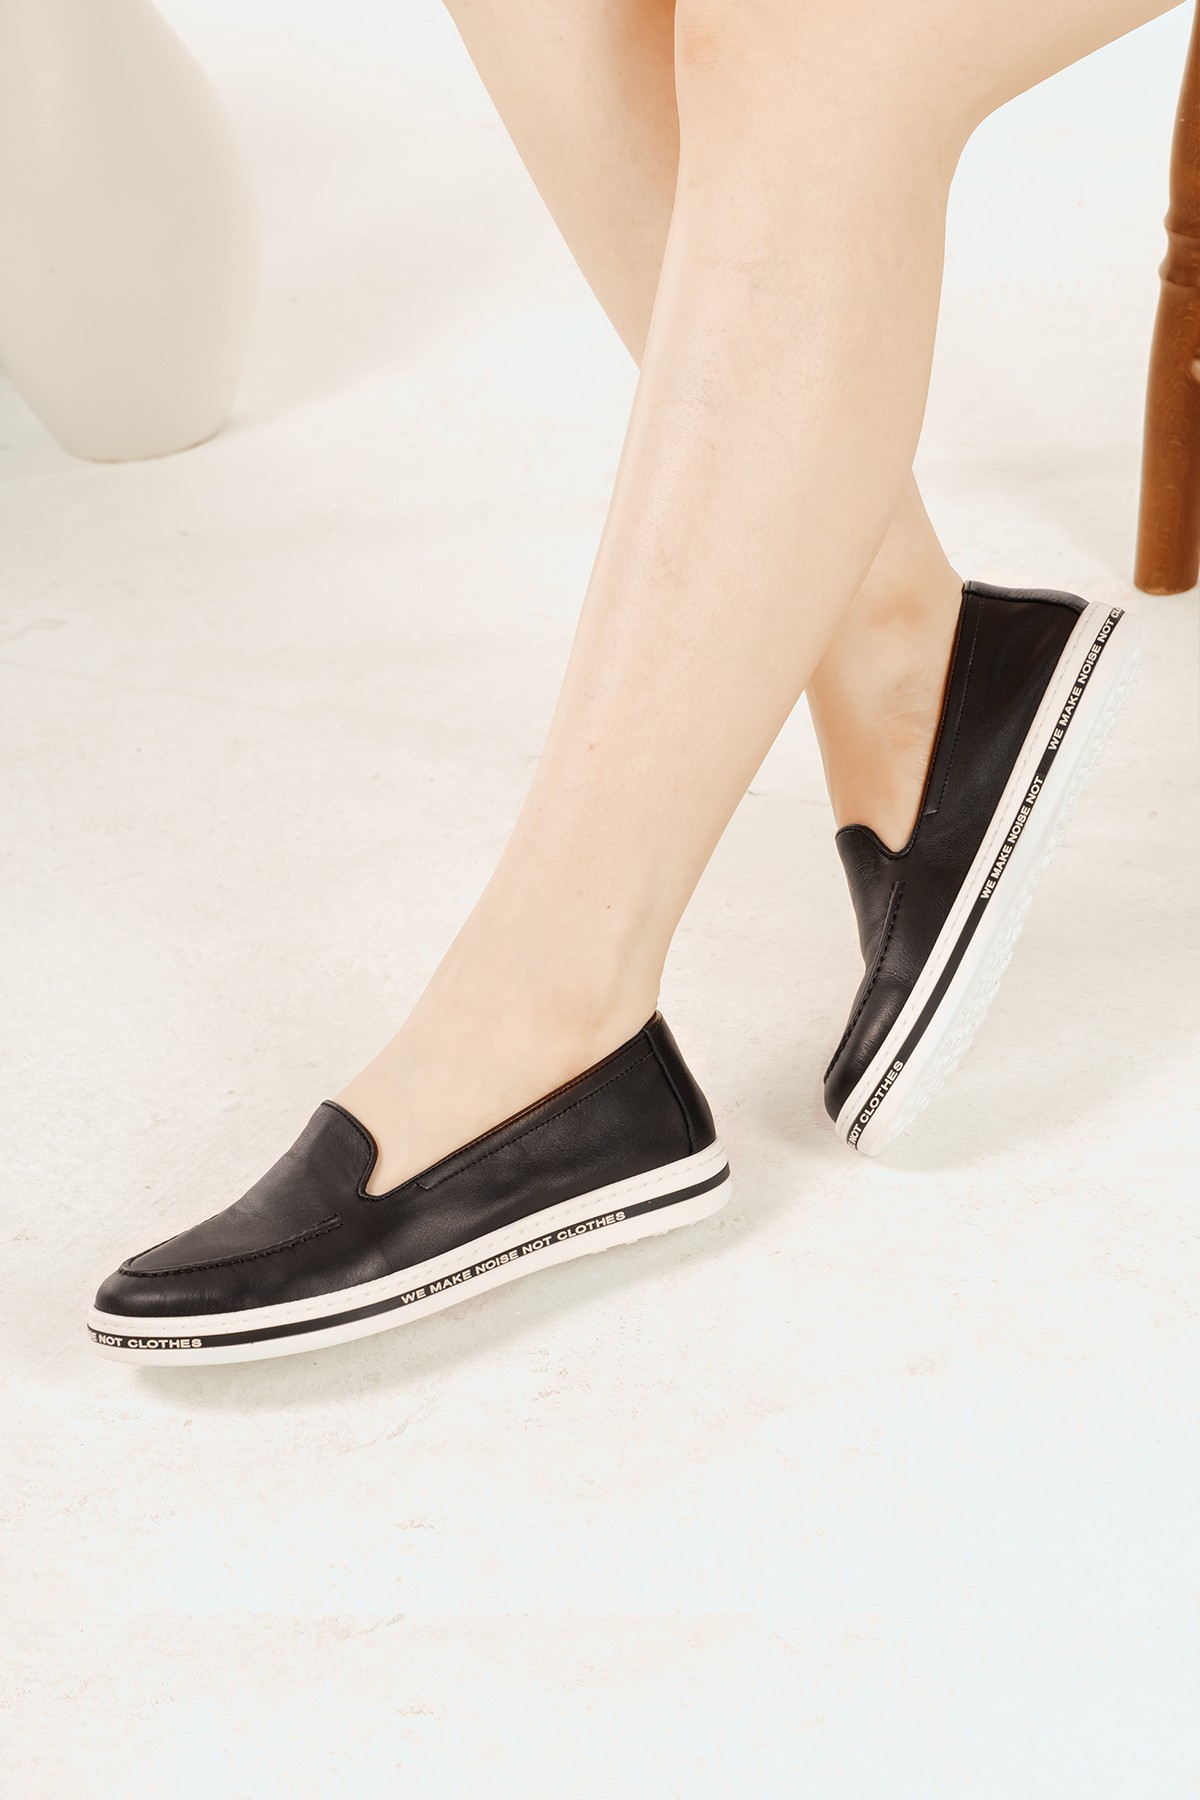 Cooliza Hakiki Deri Tabanı Yazı Detaylı Rahat Günlük Kadın Babet Ayakkabı Taba - Siyah